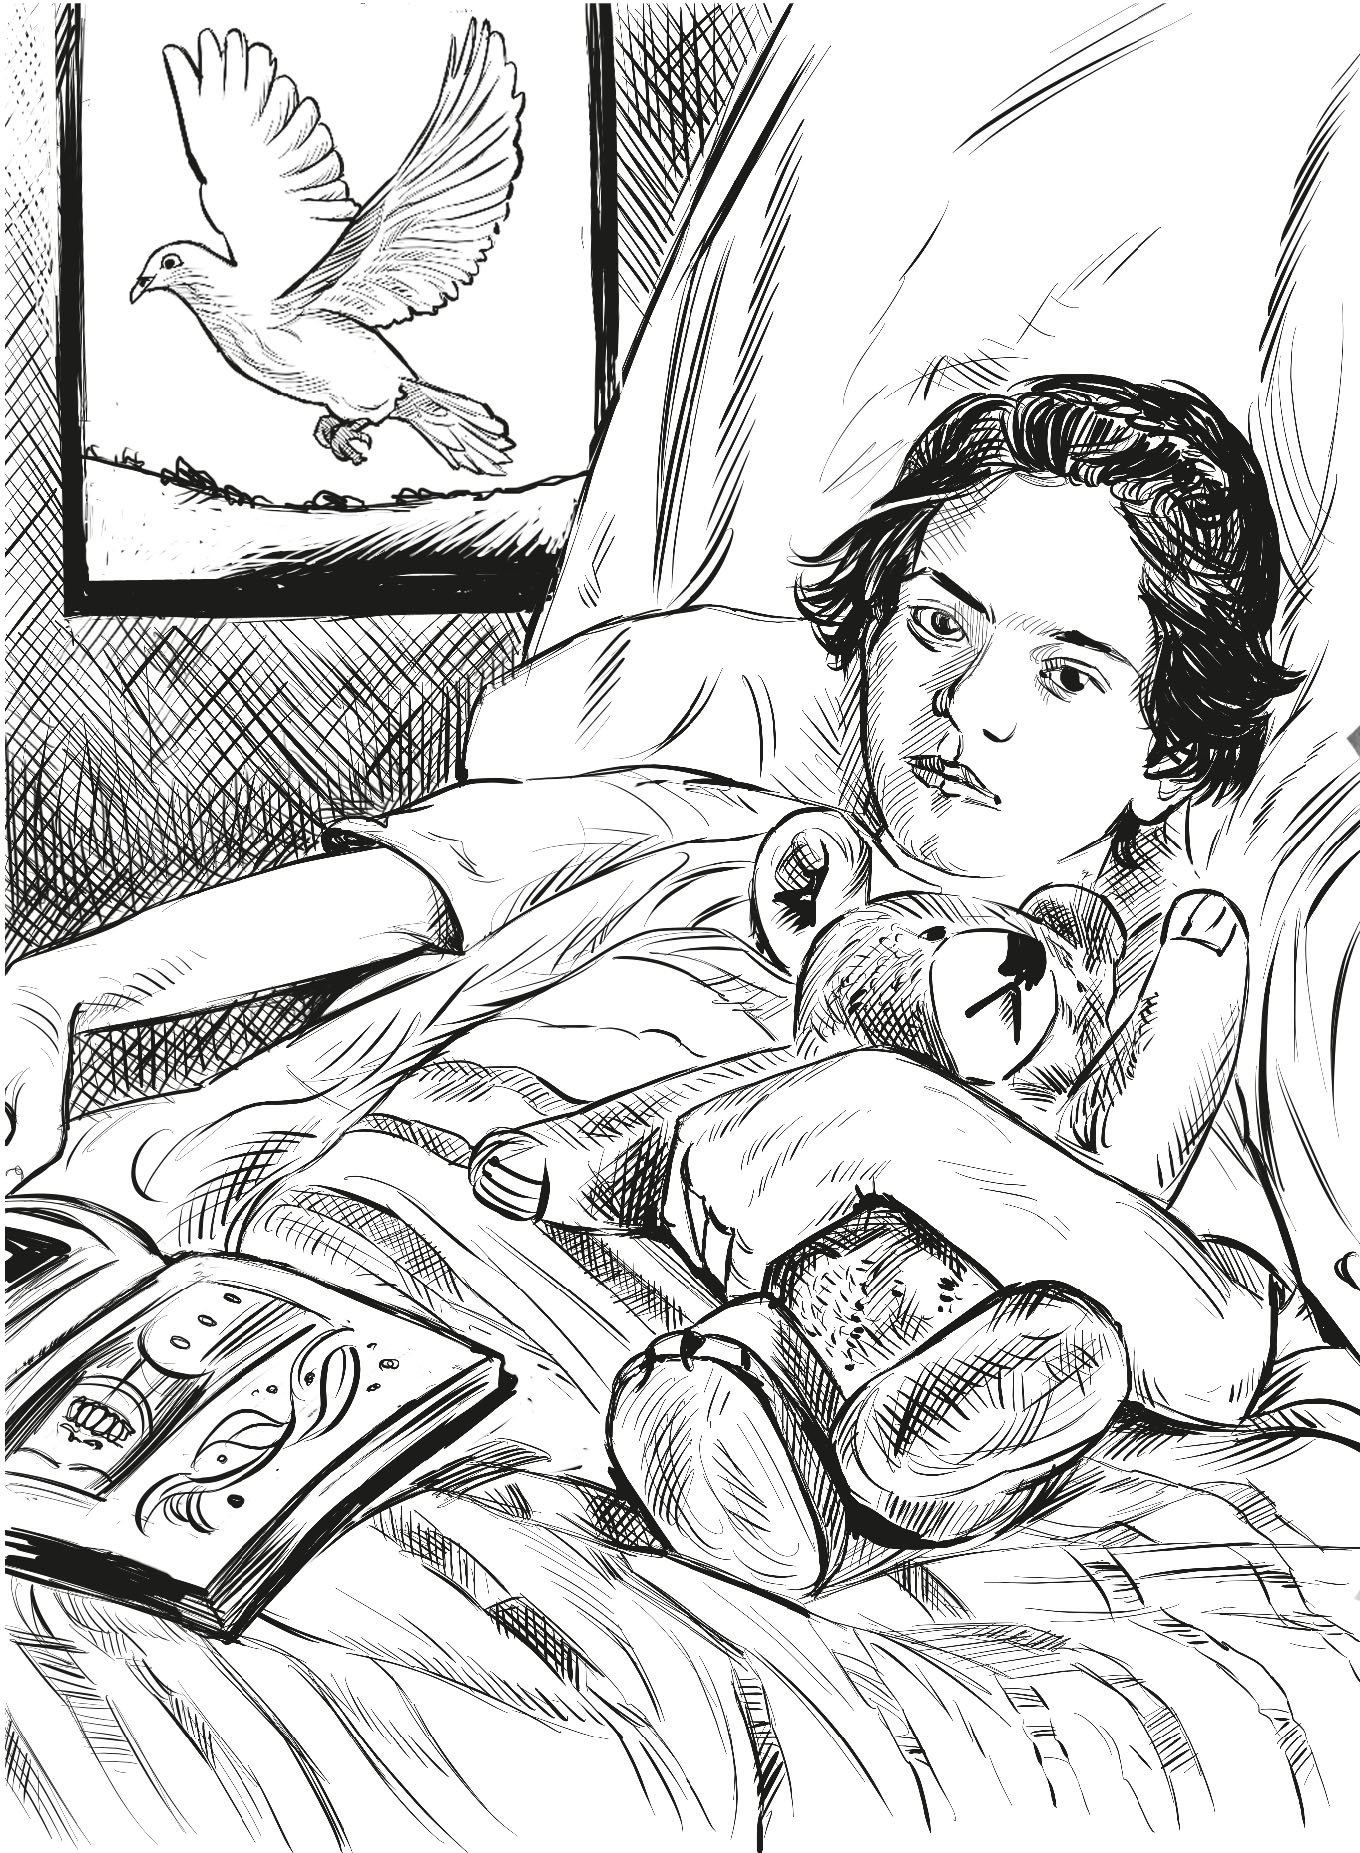 A causa de la poliomielitis la pierna derecha de Frida se debilitó y adelgazó - photo 12